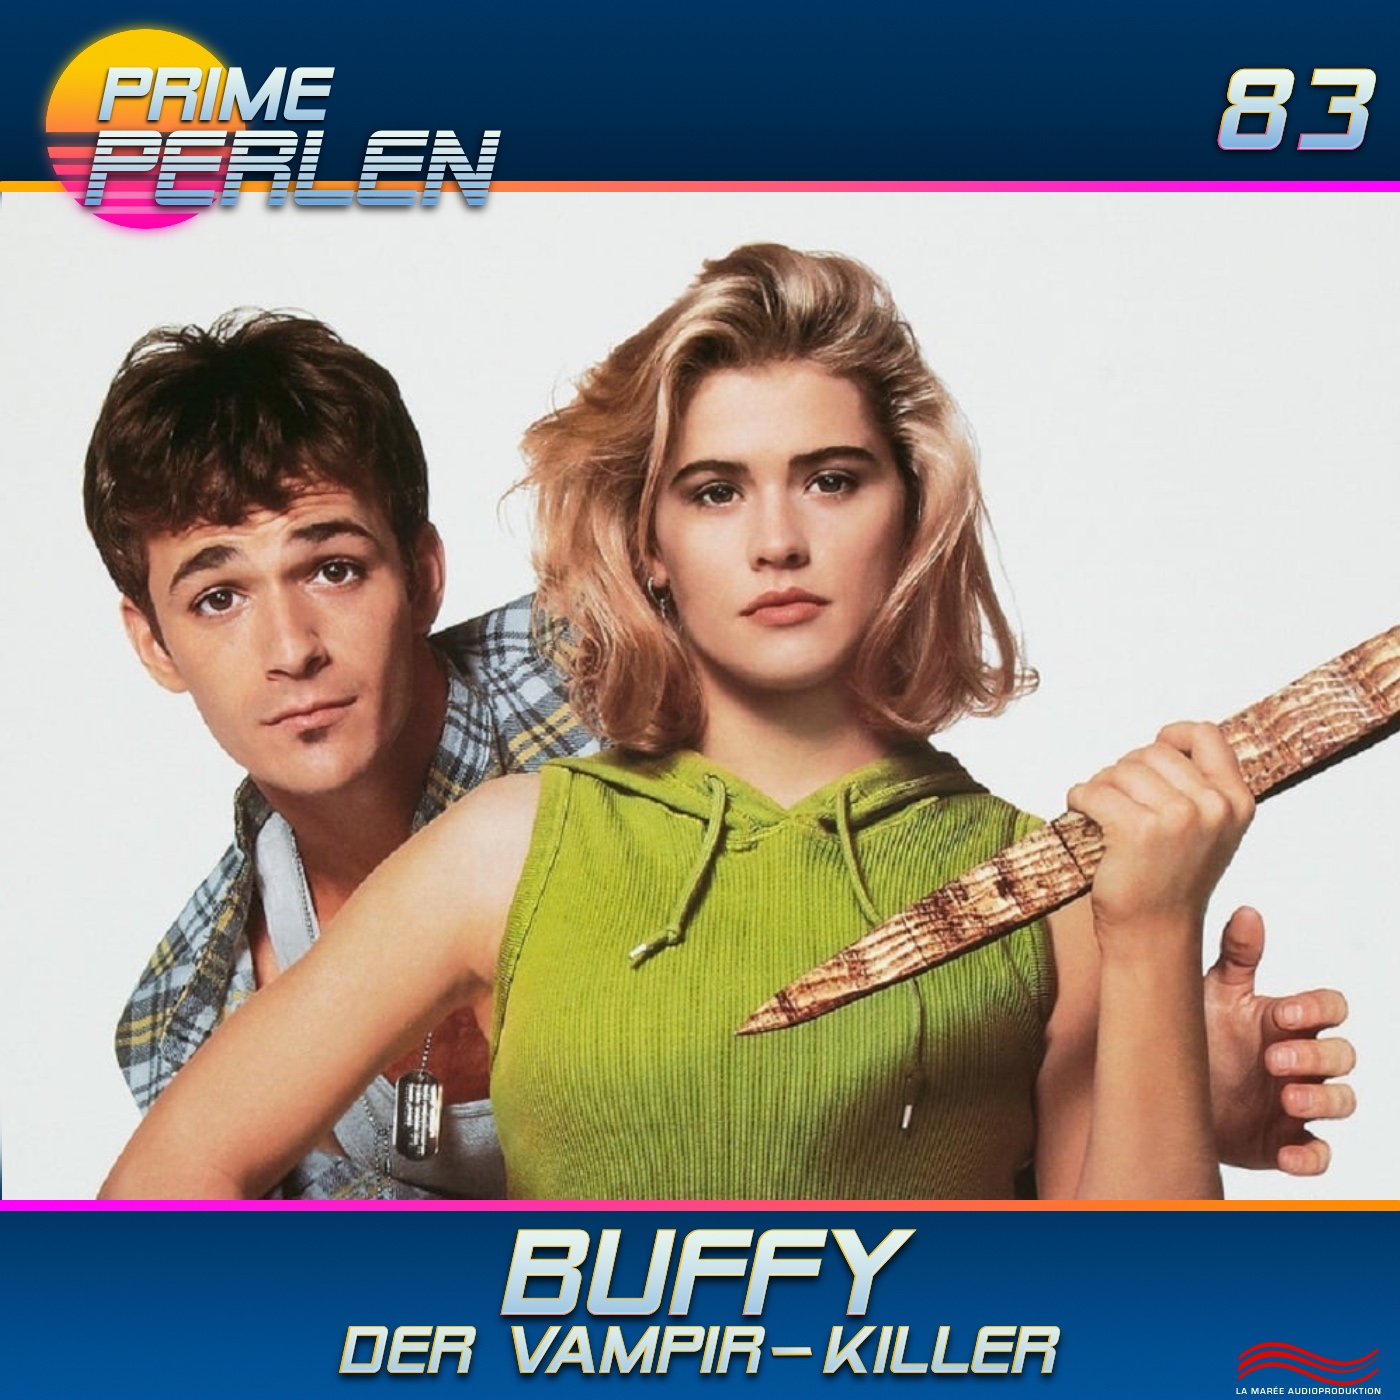 Prime Perlen #83 – Buffy - Der Vampir-Killer